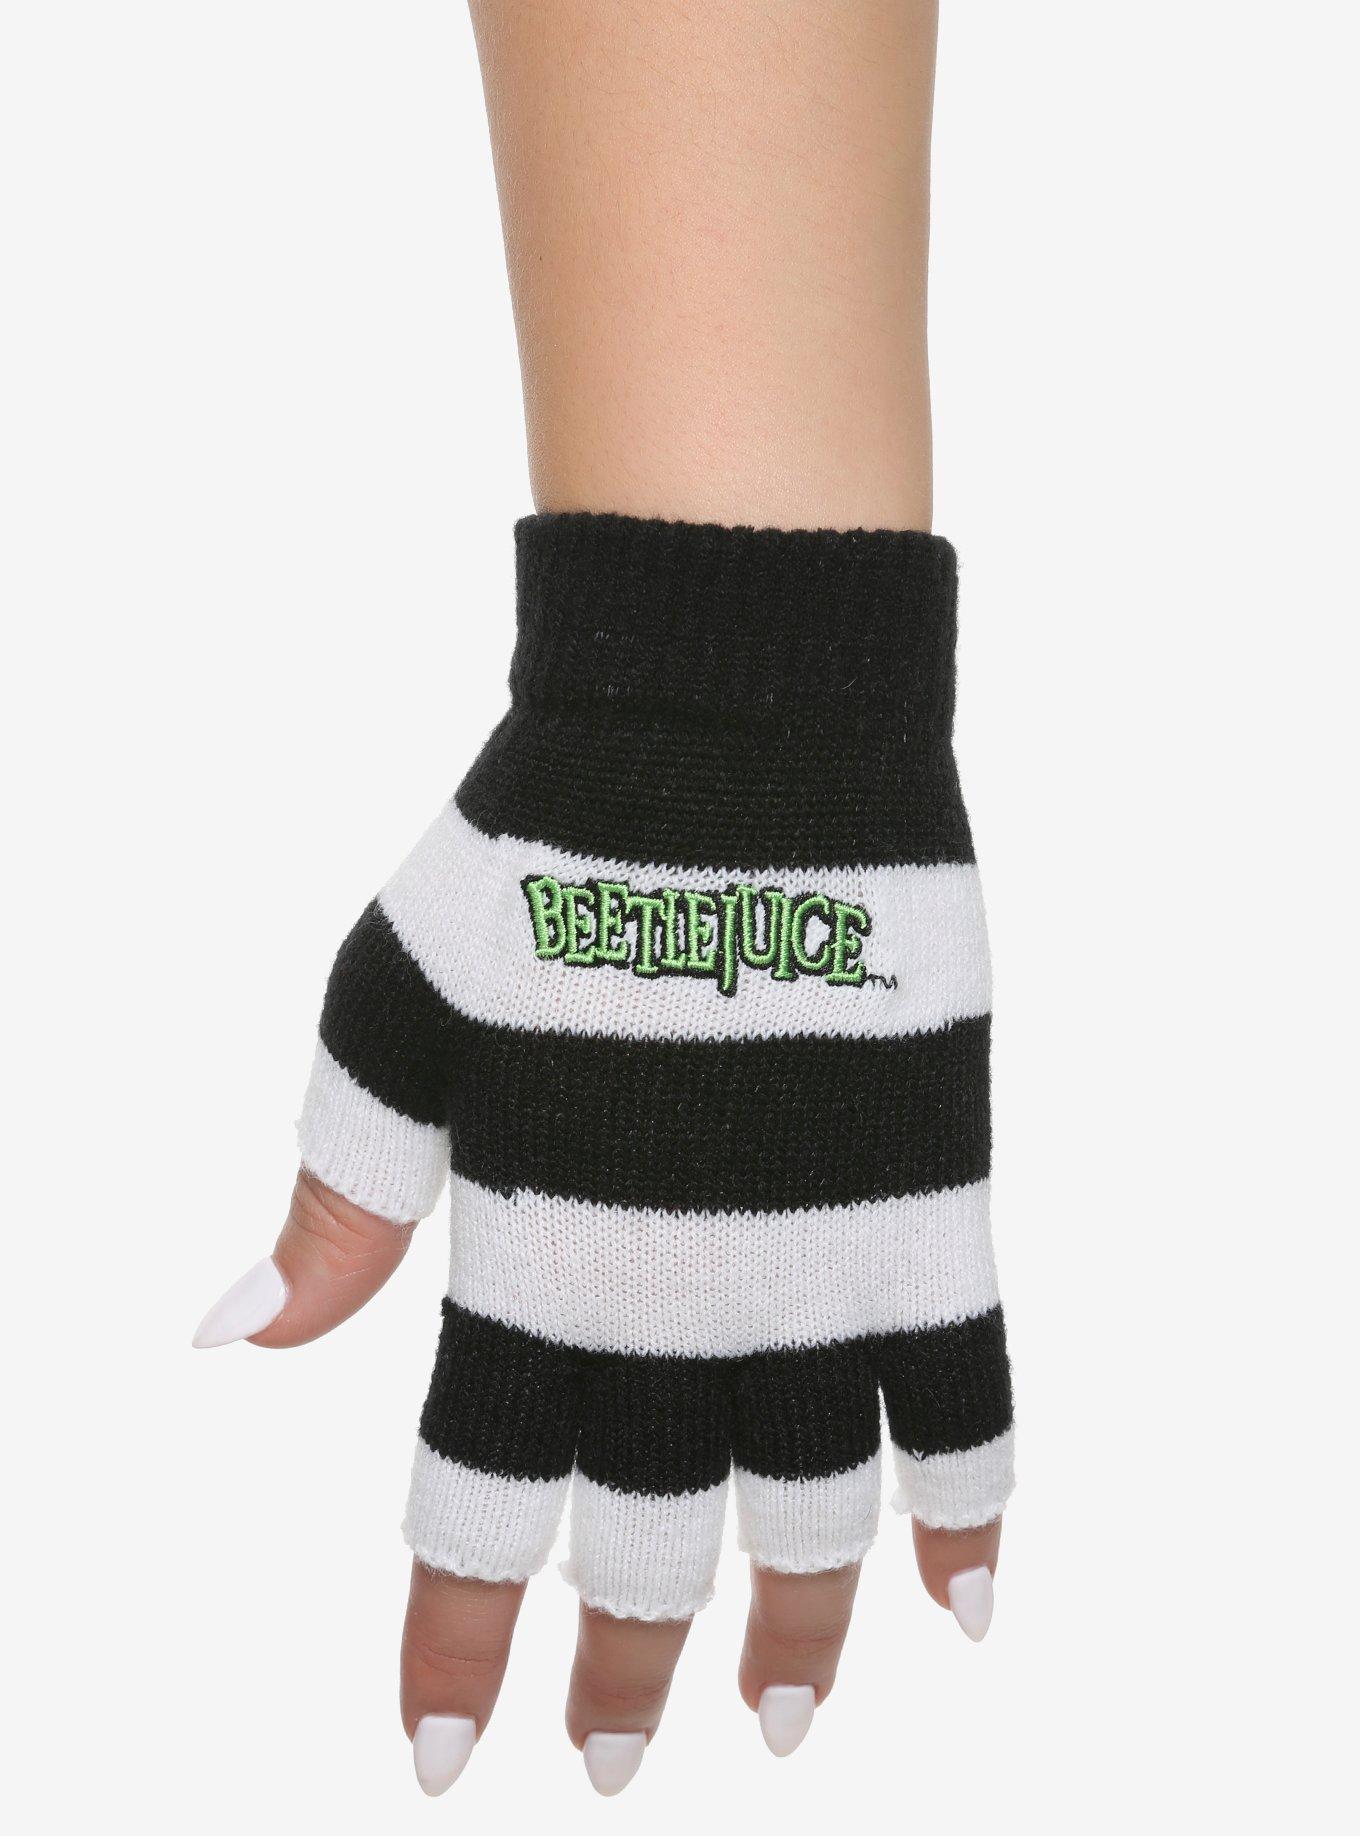 Beetlejuice Striped Fingerless Gloves, , hi-res